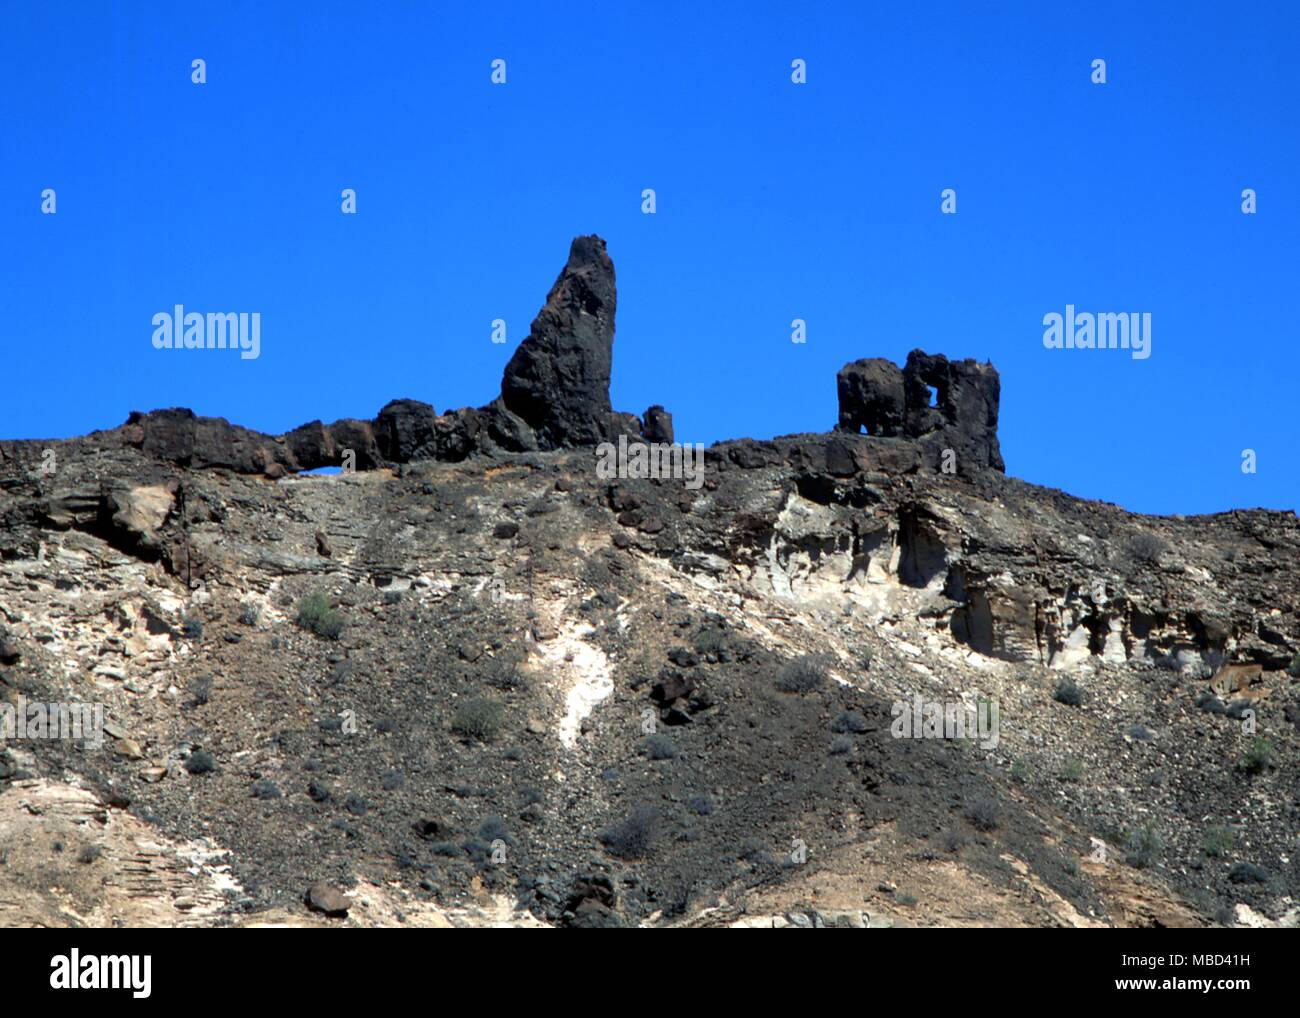 Les affleurements rocheux de la Gran Canaria, dans les Canaries, qui sont présentées par certains comme les vestiges du continent perdu de l'Atlantide Banque D'Images